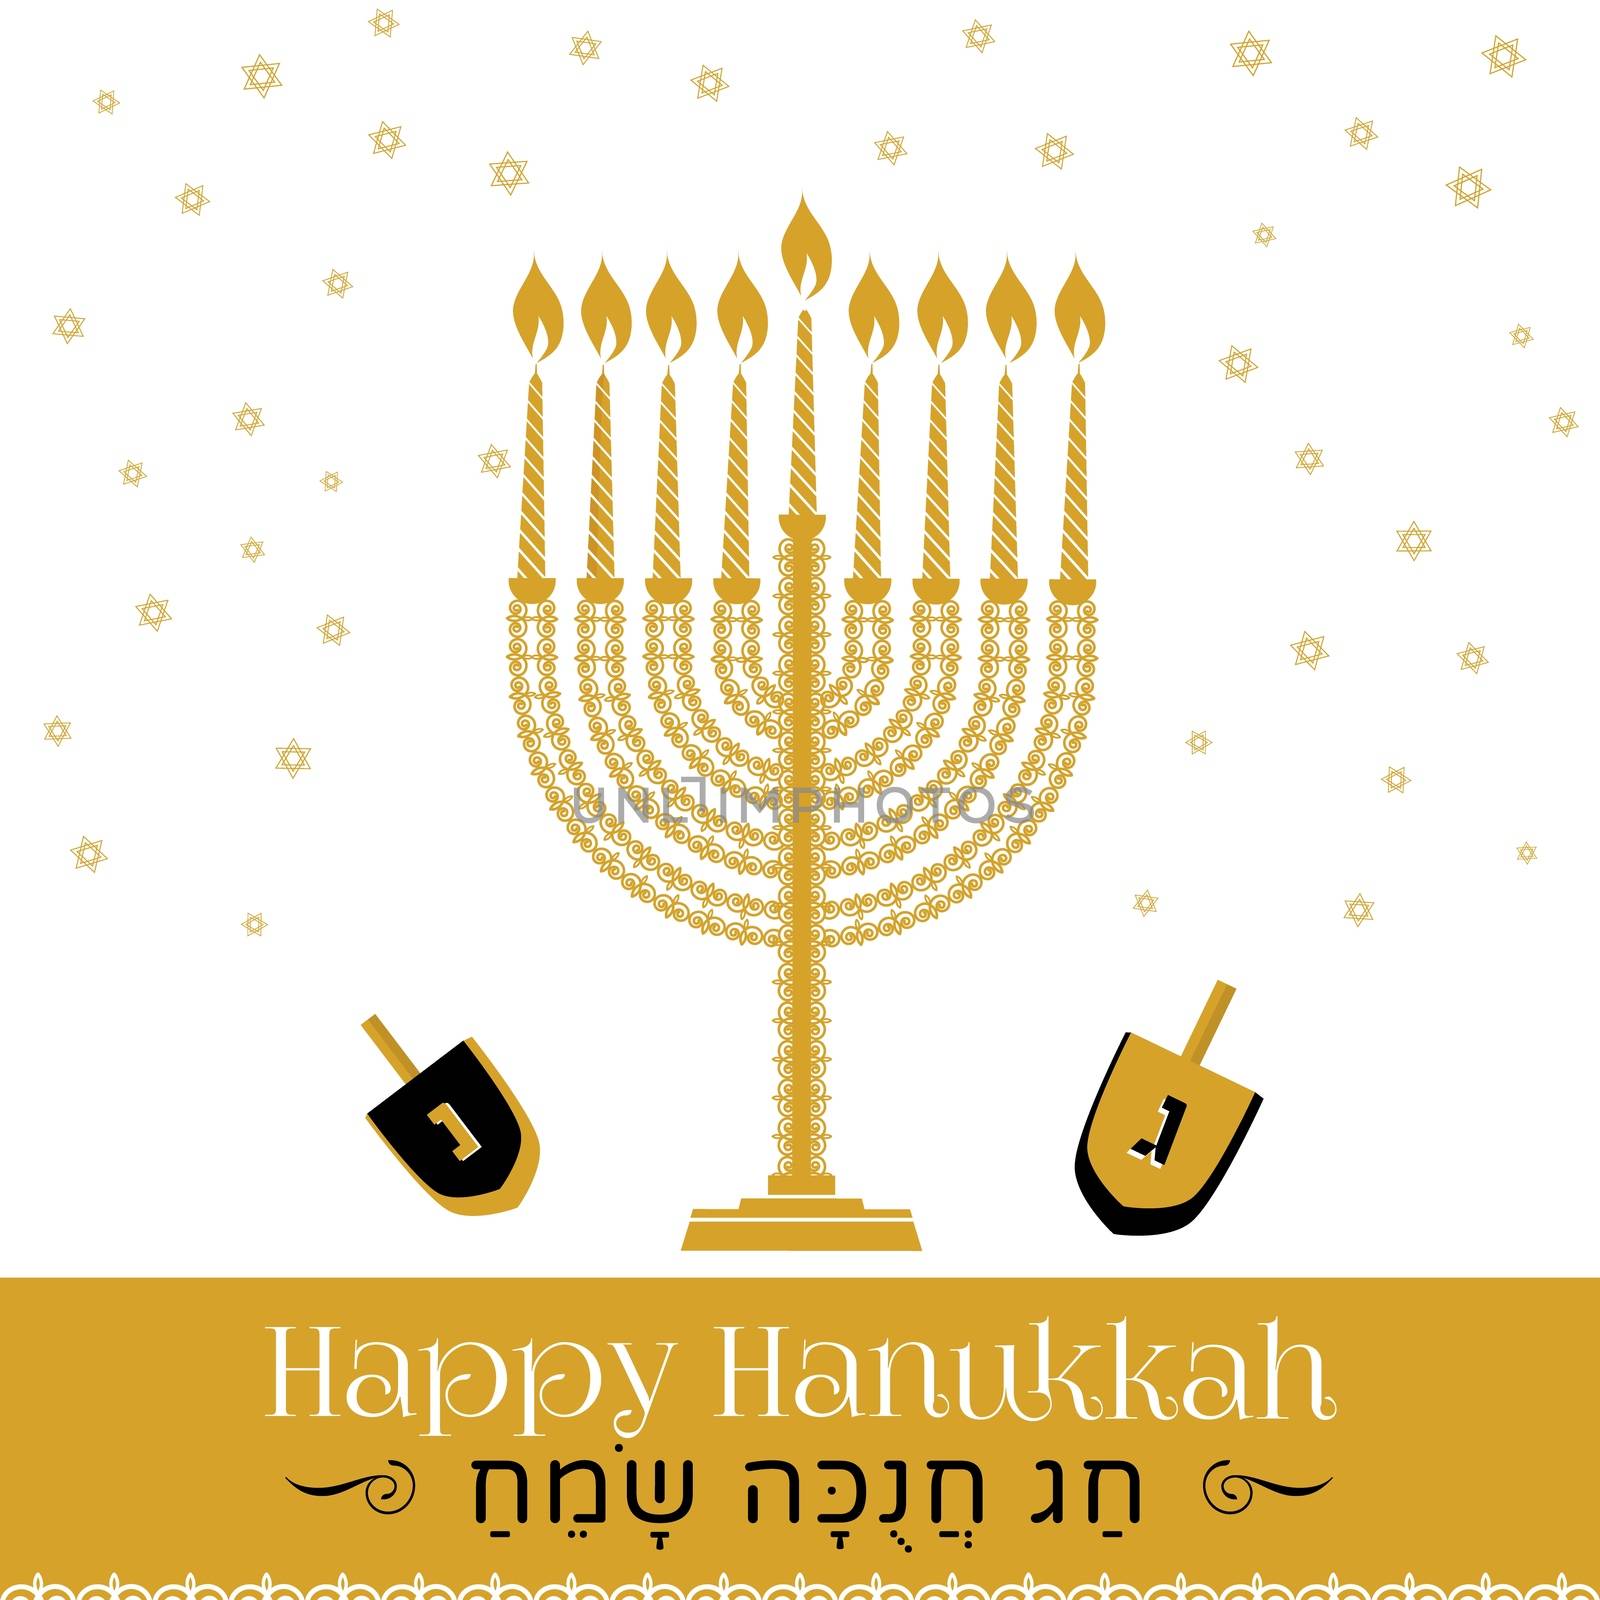 Hanukkah greeting card , Jewish holiday symbols golden hanukkah menora and candles, dradel, stars, by Sofir